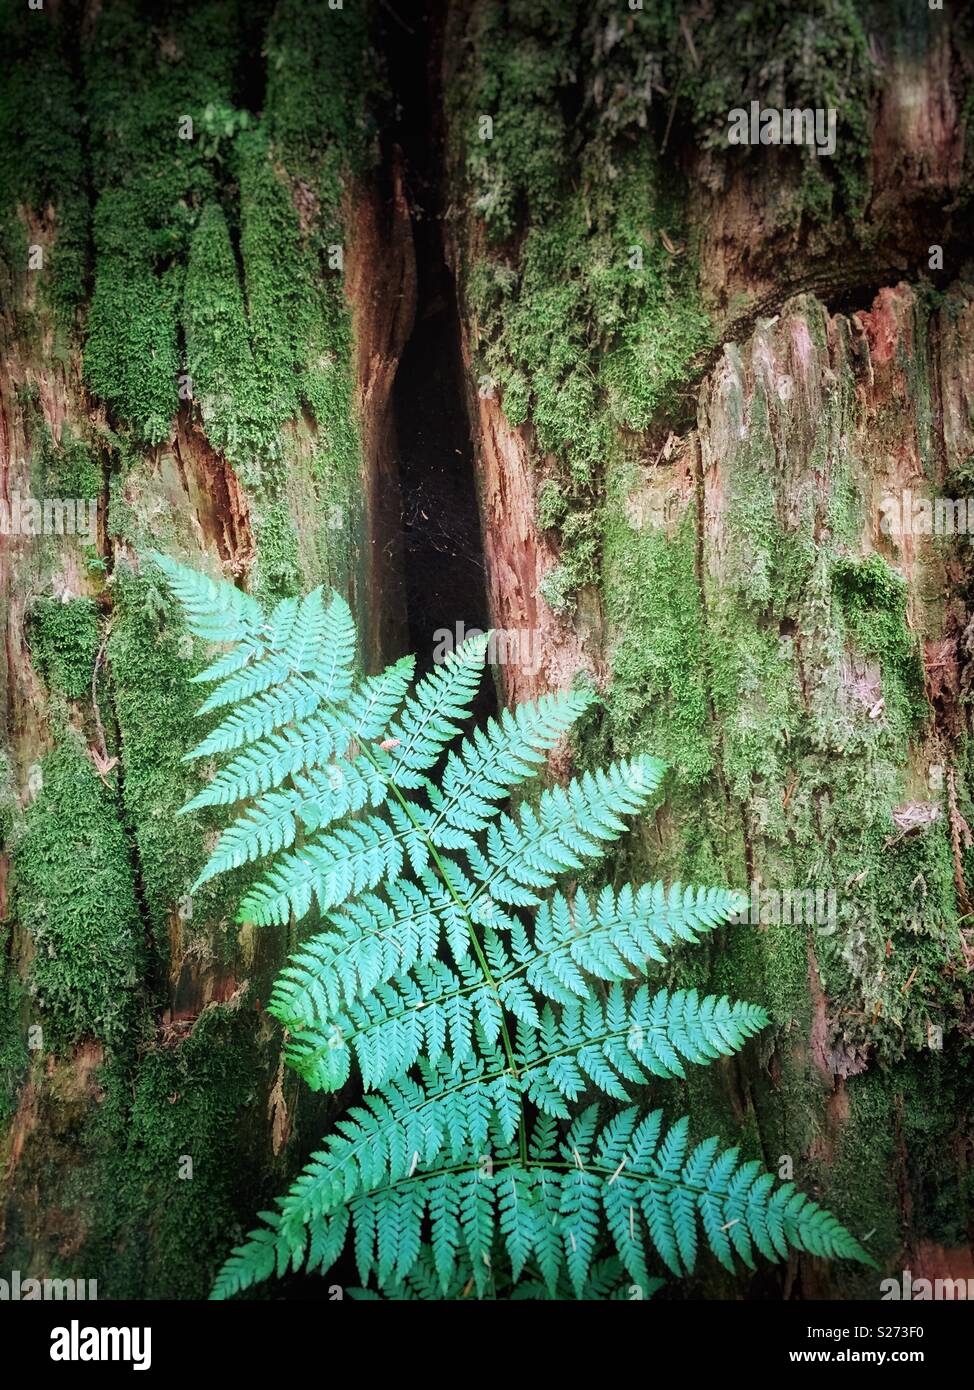 Grüne Bracken fern Anlage mit Moss in einem gemäßigten Regenwald. Stumpf der alte Baum im Hintergrund protokolliert. Mike Lake Trail. Golden Ears Provincial Park, British Columbia, Kanada. Stockfoto